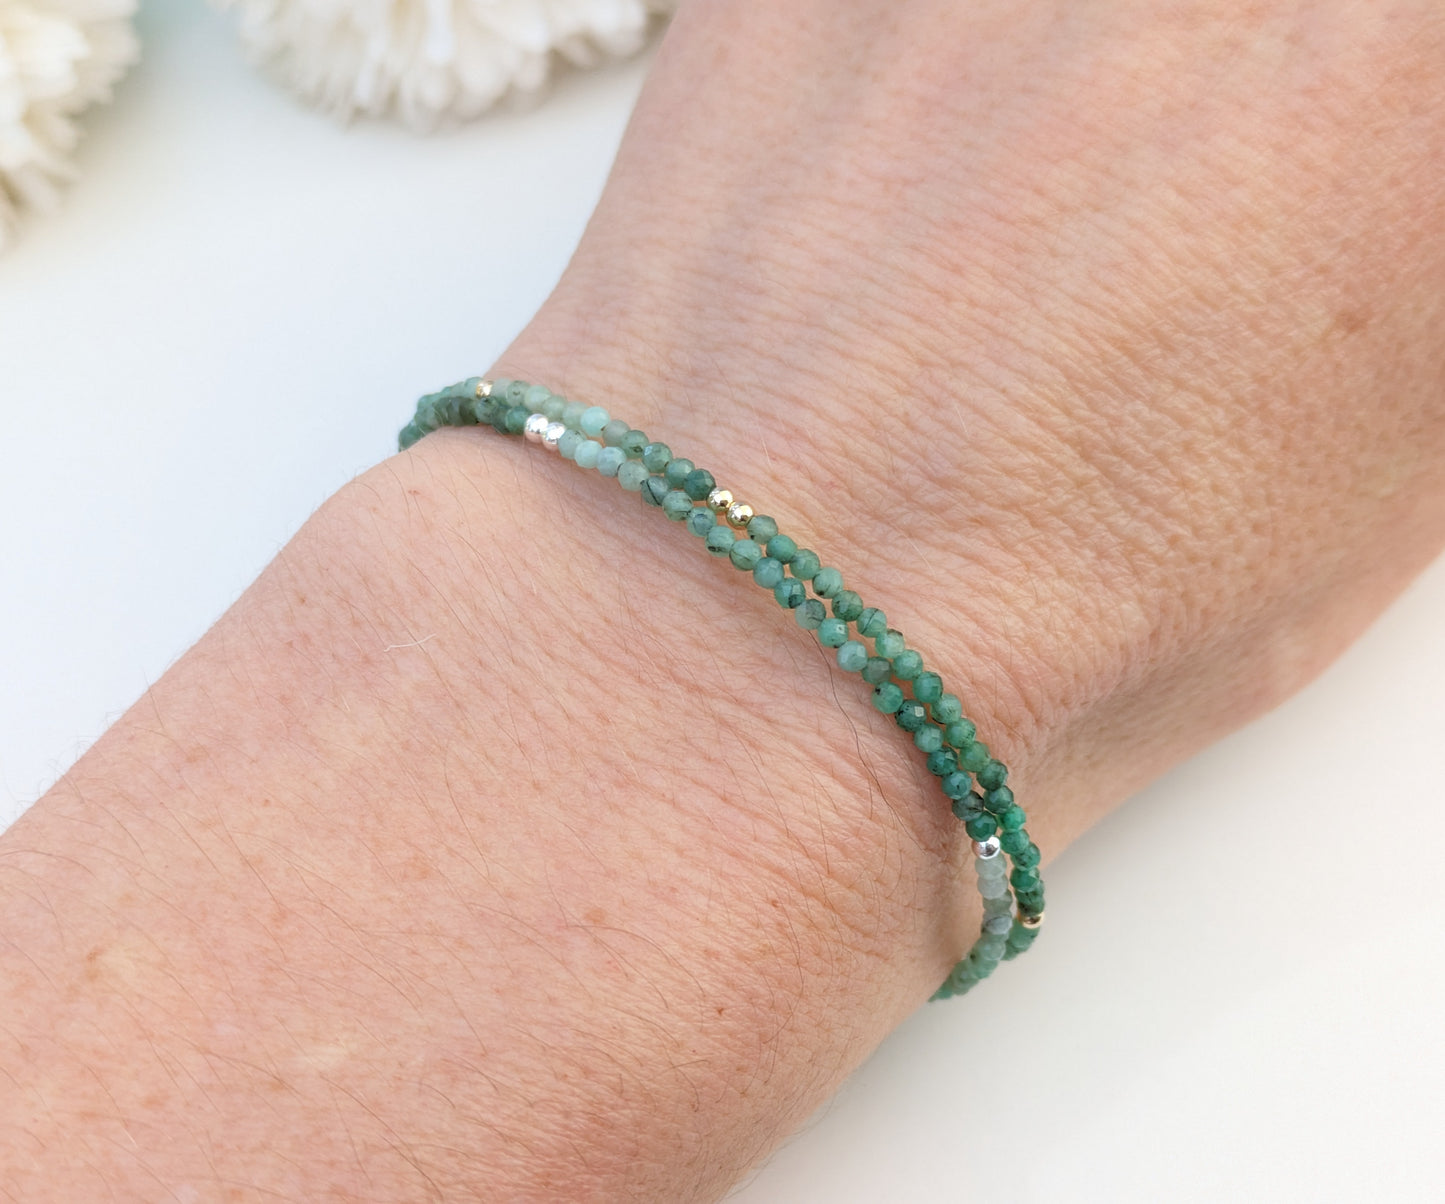 Skinny emerald bracelet in silver or gold.